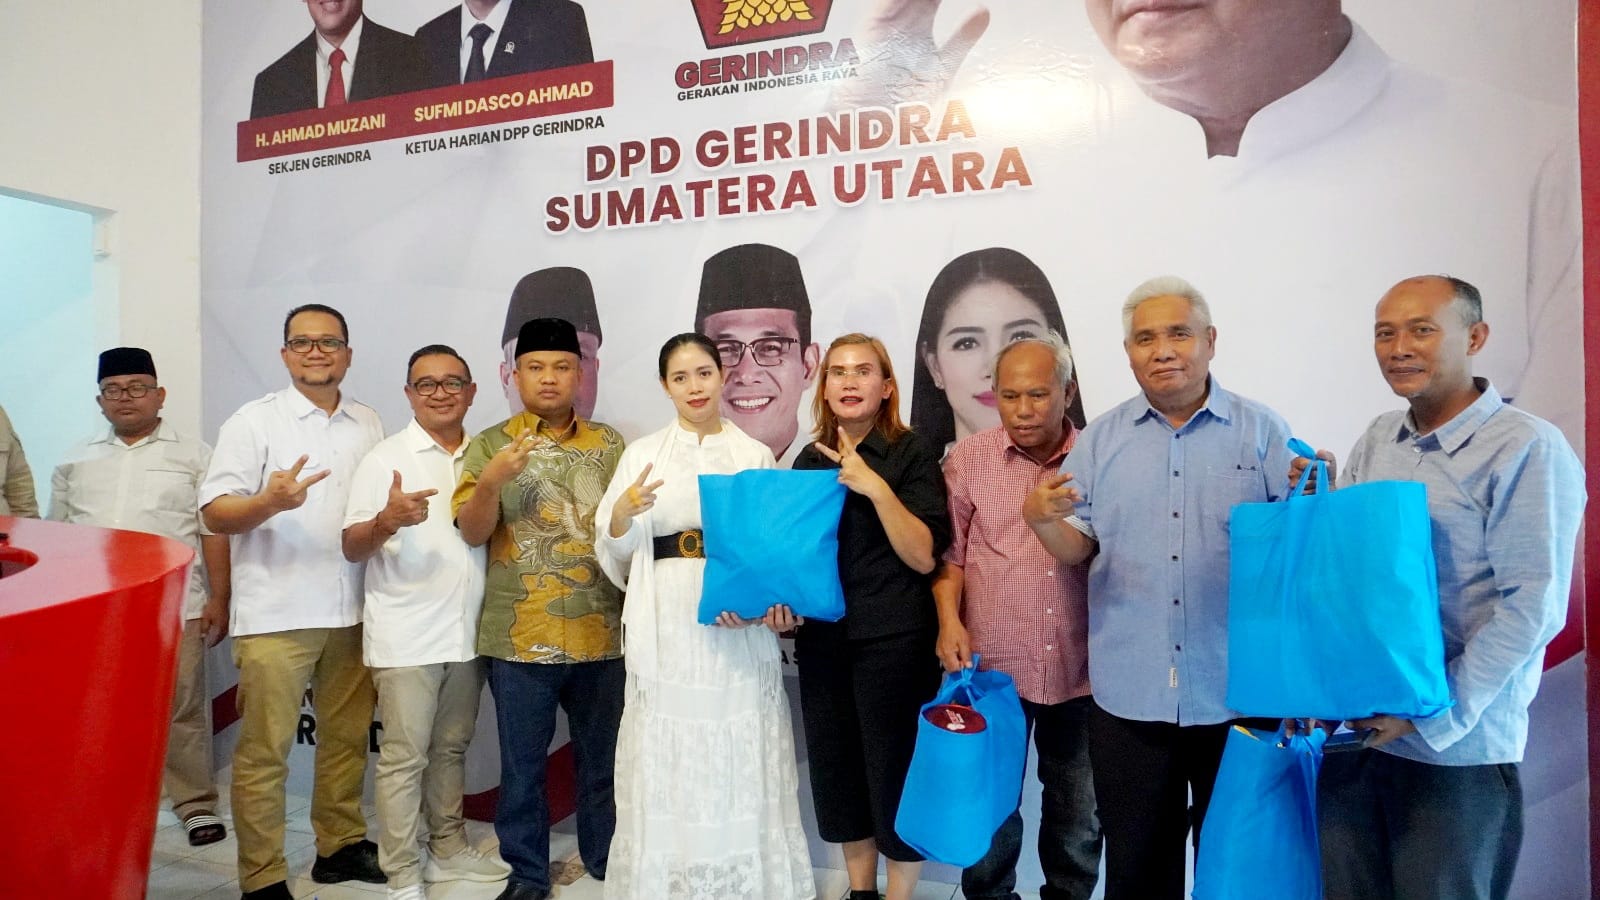 Gerindra Sumut, insan pers, silaturahmi, Lebaran, sosialisasi program kerja, Pemilu 2024, Prabowo Subianto, Indonesia Raya.